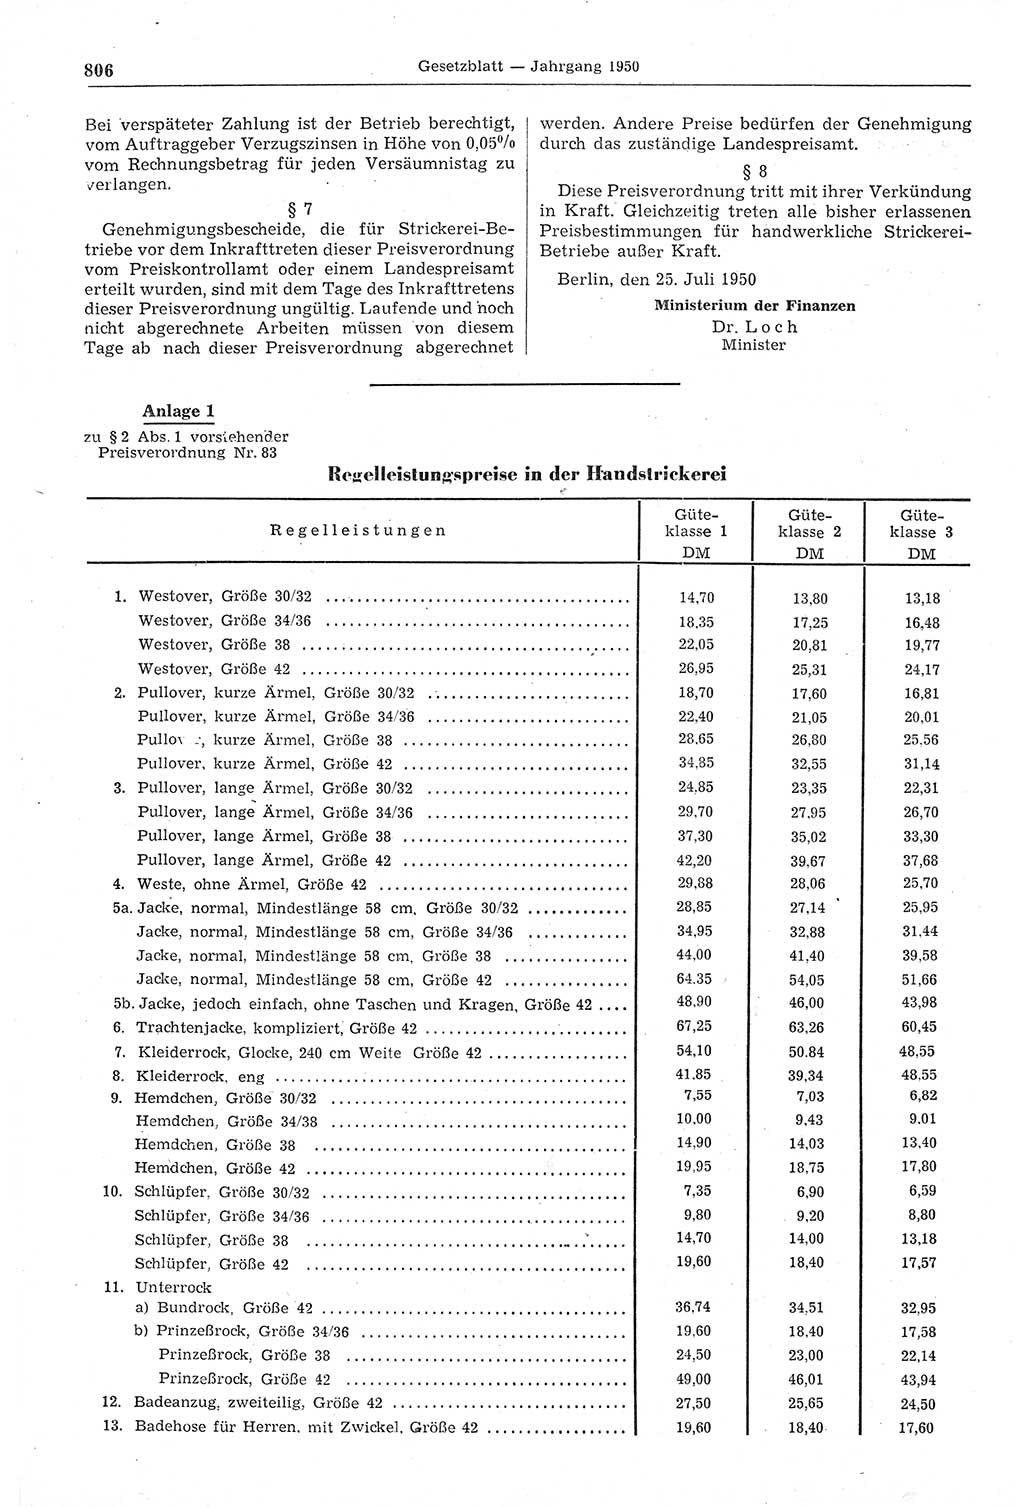 Gesetzblatt (GBl.) der Deutschen Demokratischen Republik (DDR) 1950, Seite 806 (GBl. DDR 1950, S. 806)